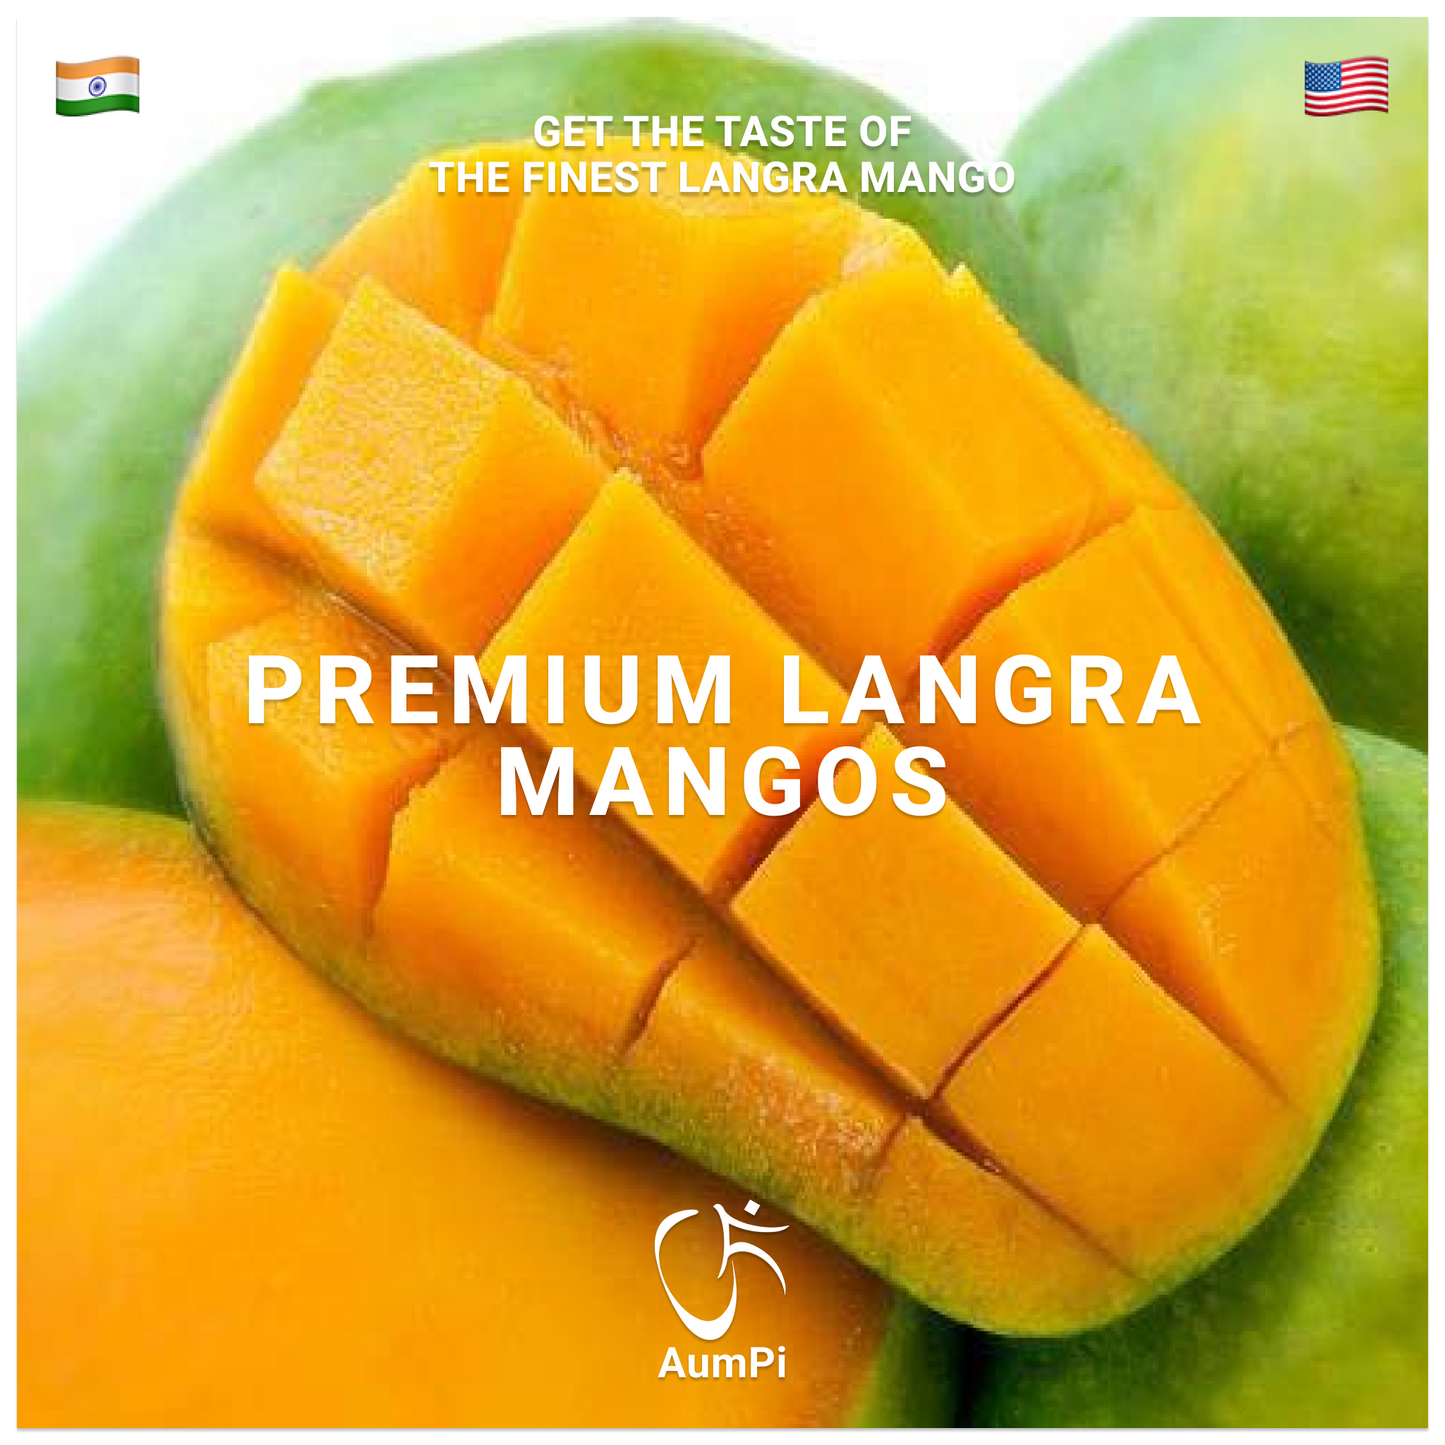 AumPi - Premium Langra Mangos